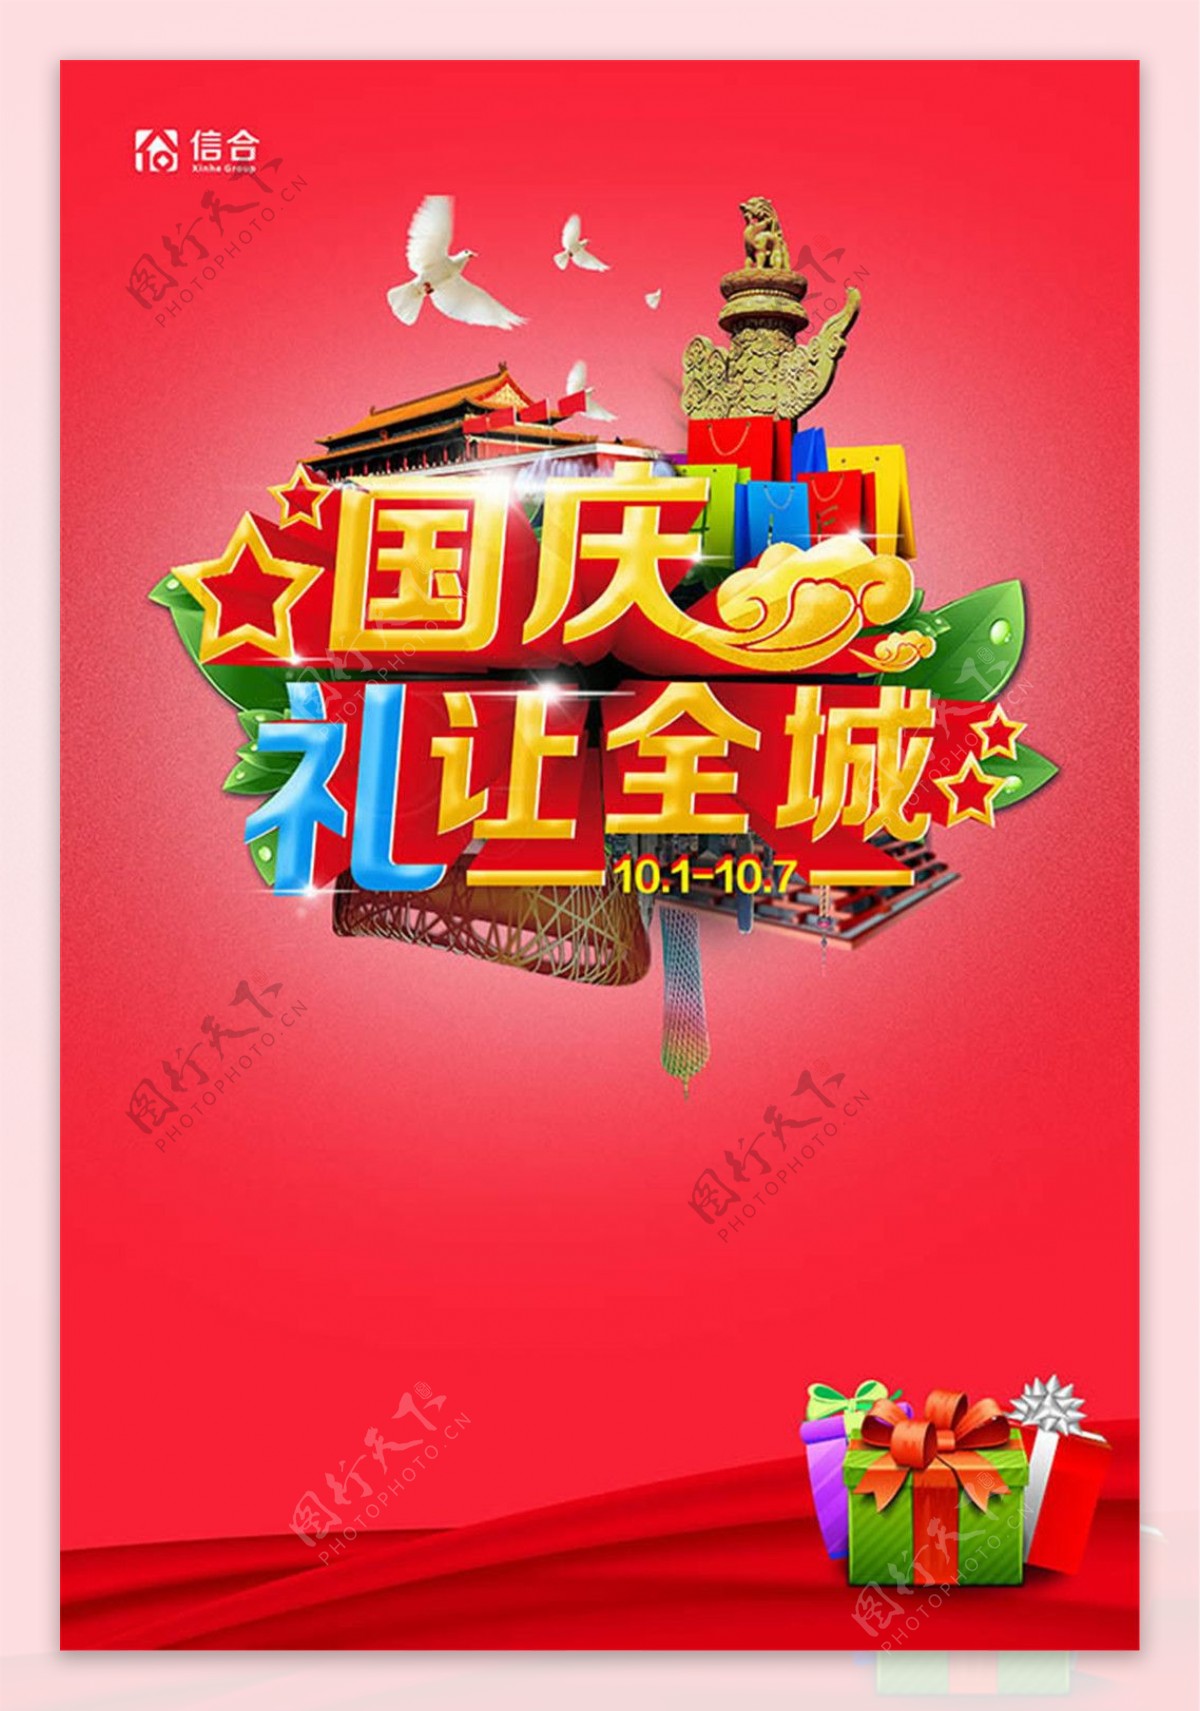 国庆节促销海报设计psd素材